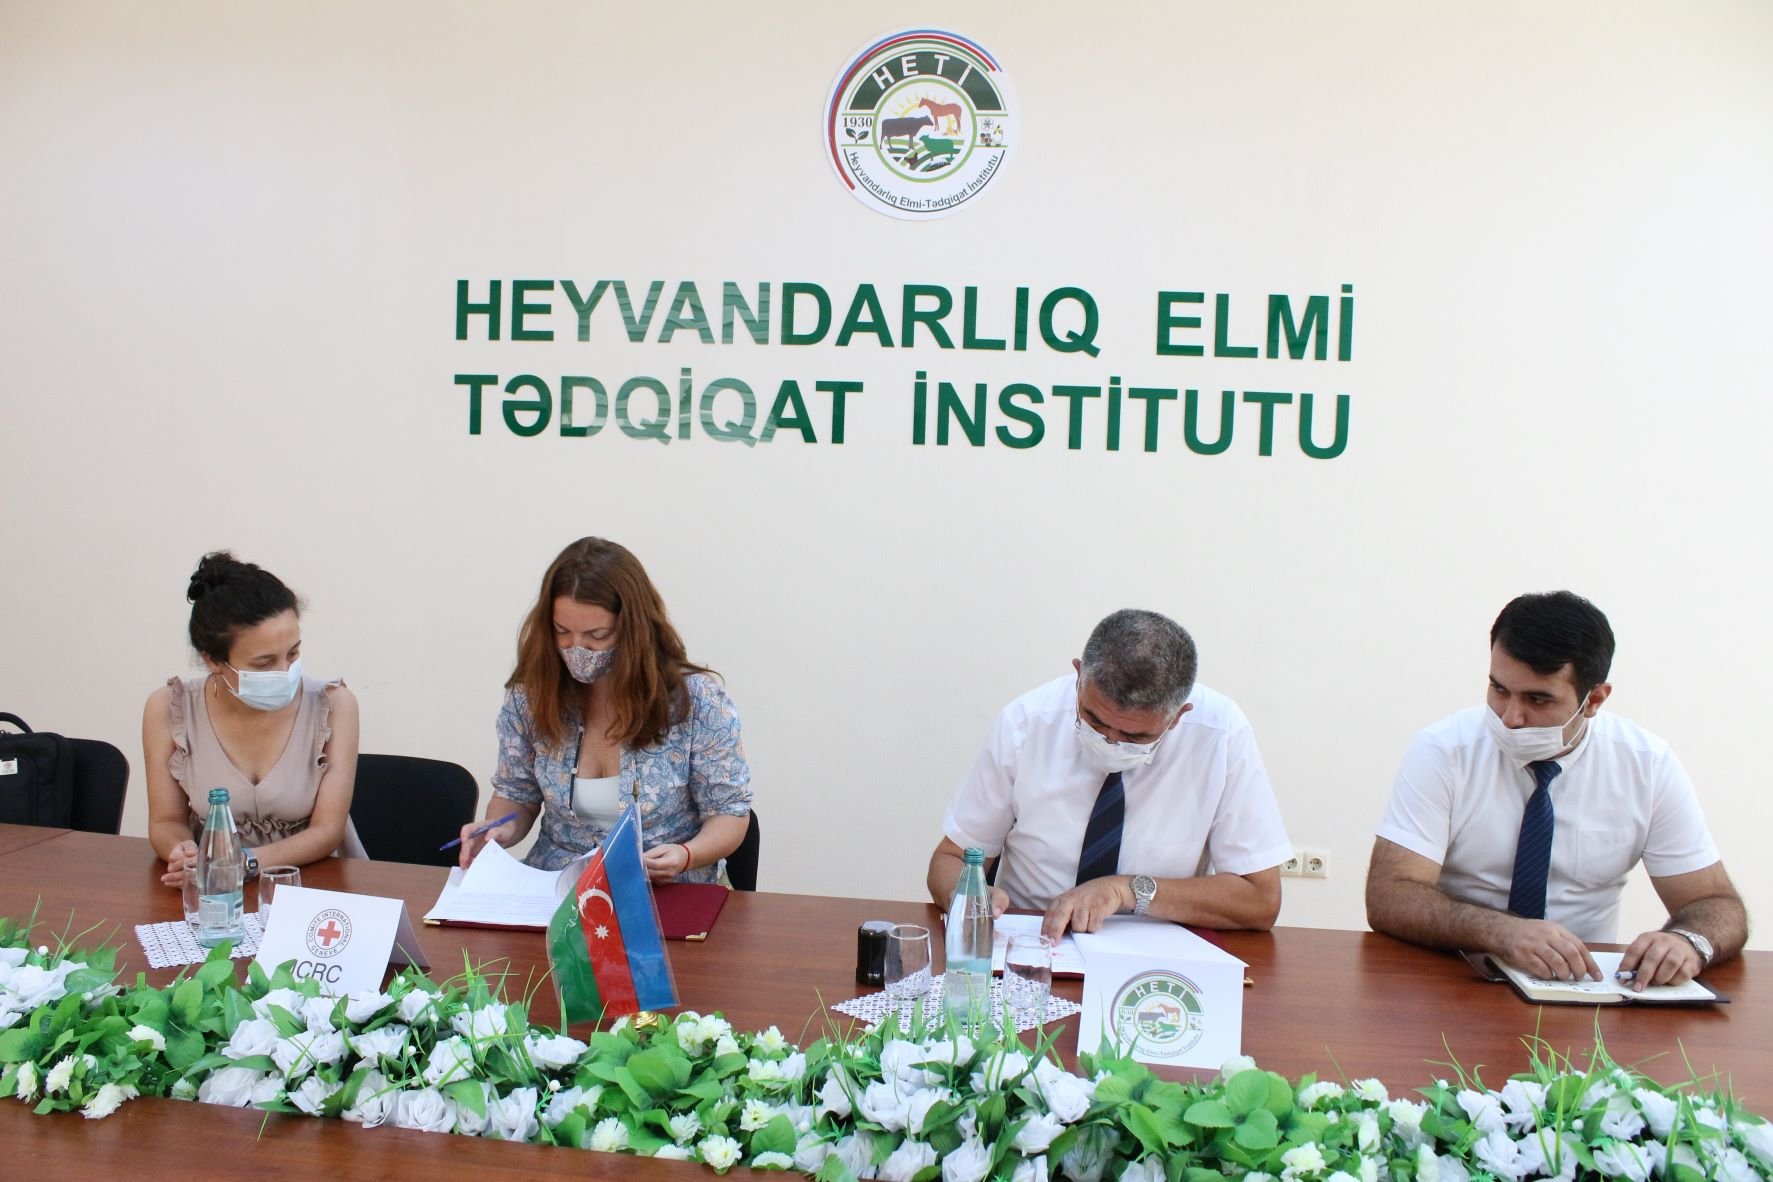 Heyvandarlıq Elmi-Tədqiqat İnstitutu və Beynəlxalq Qızıl Xaç Komitəsi arasında anlaşma memorandumu imzalanıb.